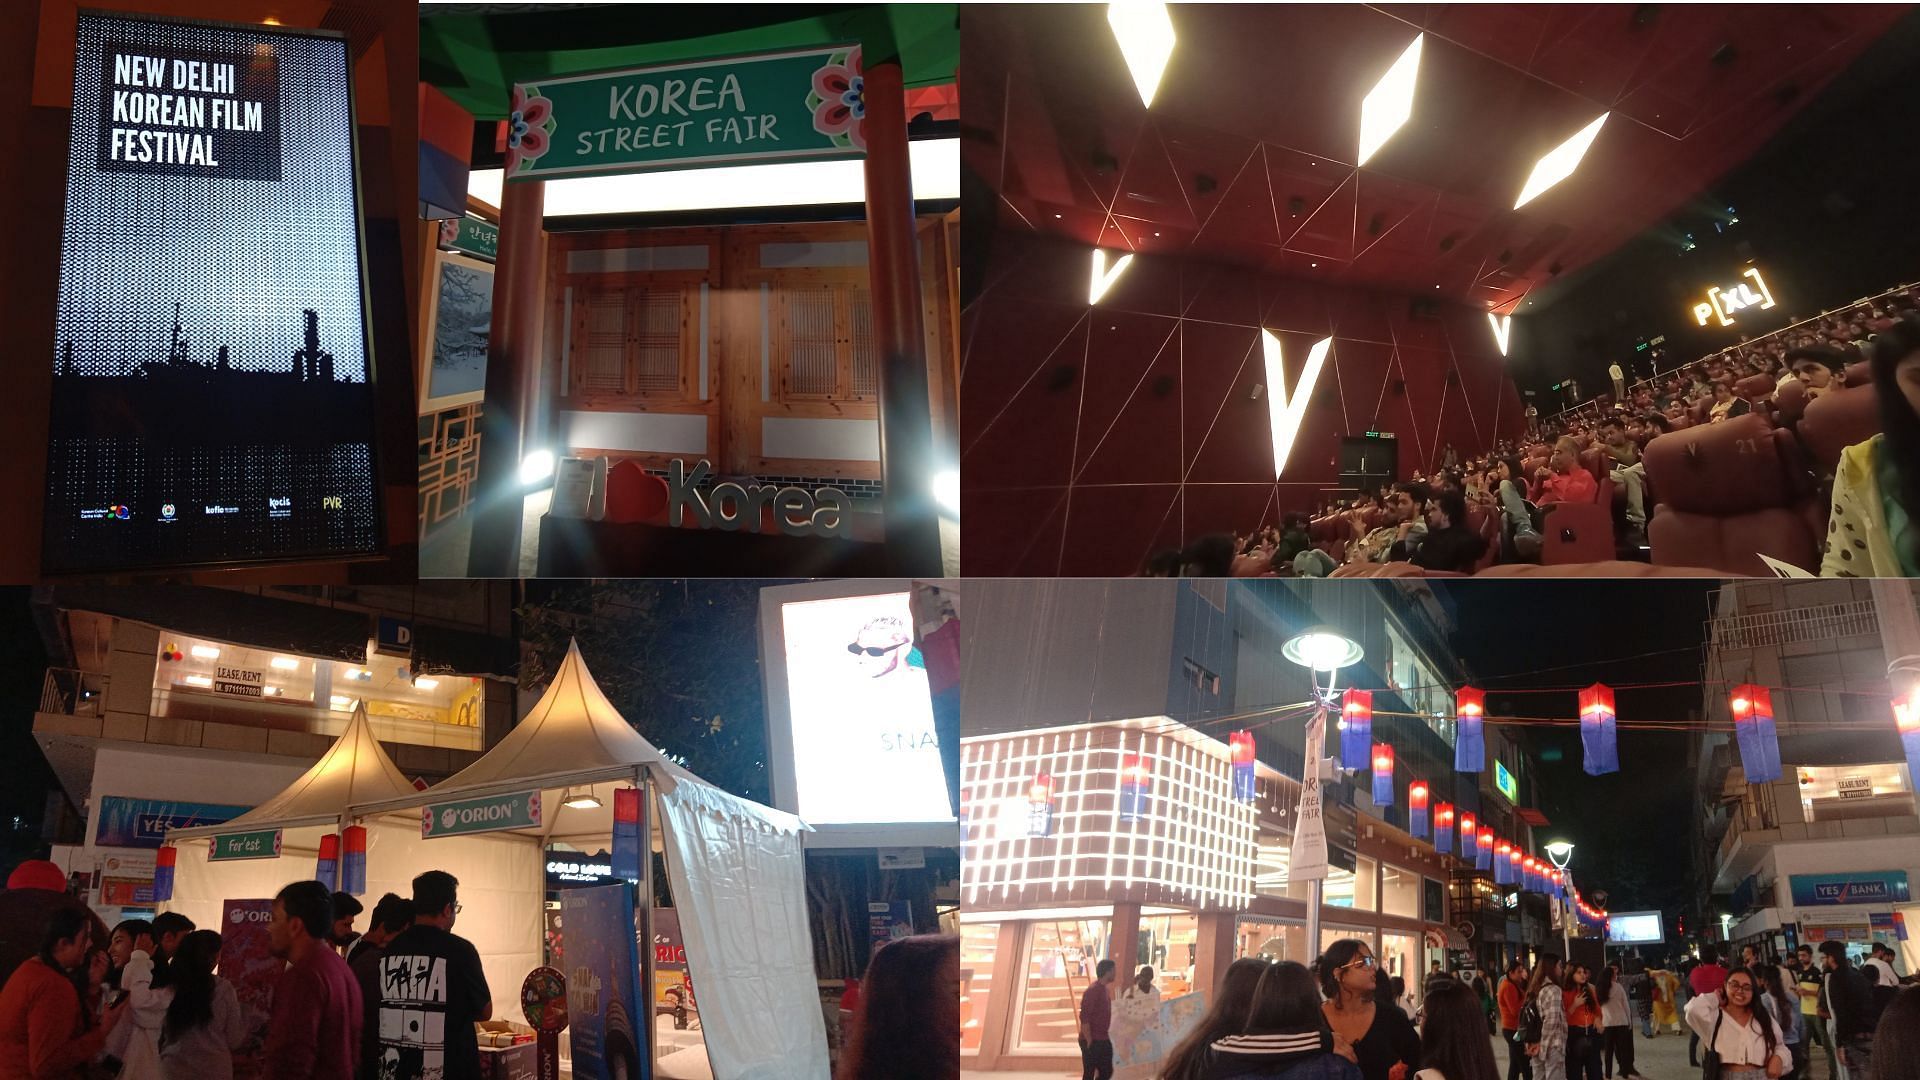 2022 New Delhi Korean Film Festival and Korea Street Fair (Image via Sportskeeda) 